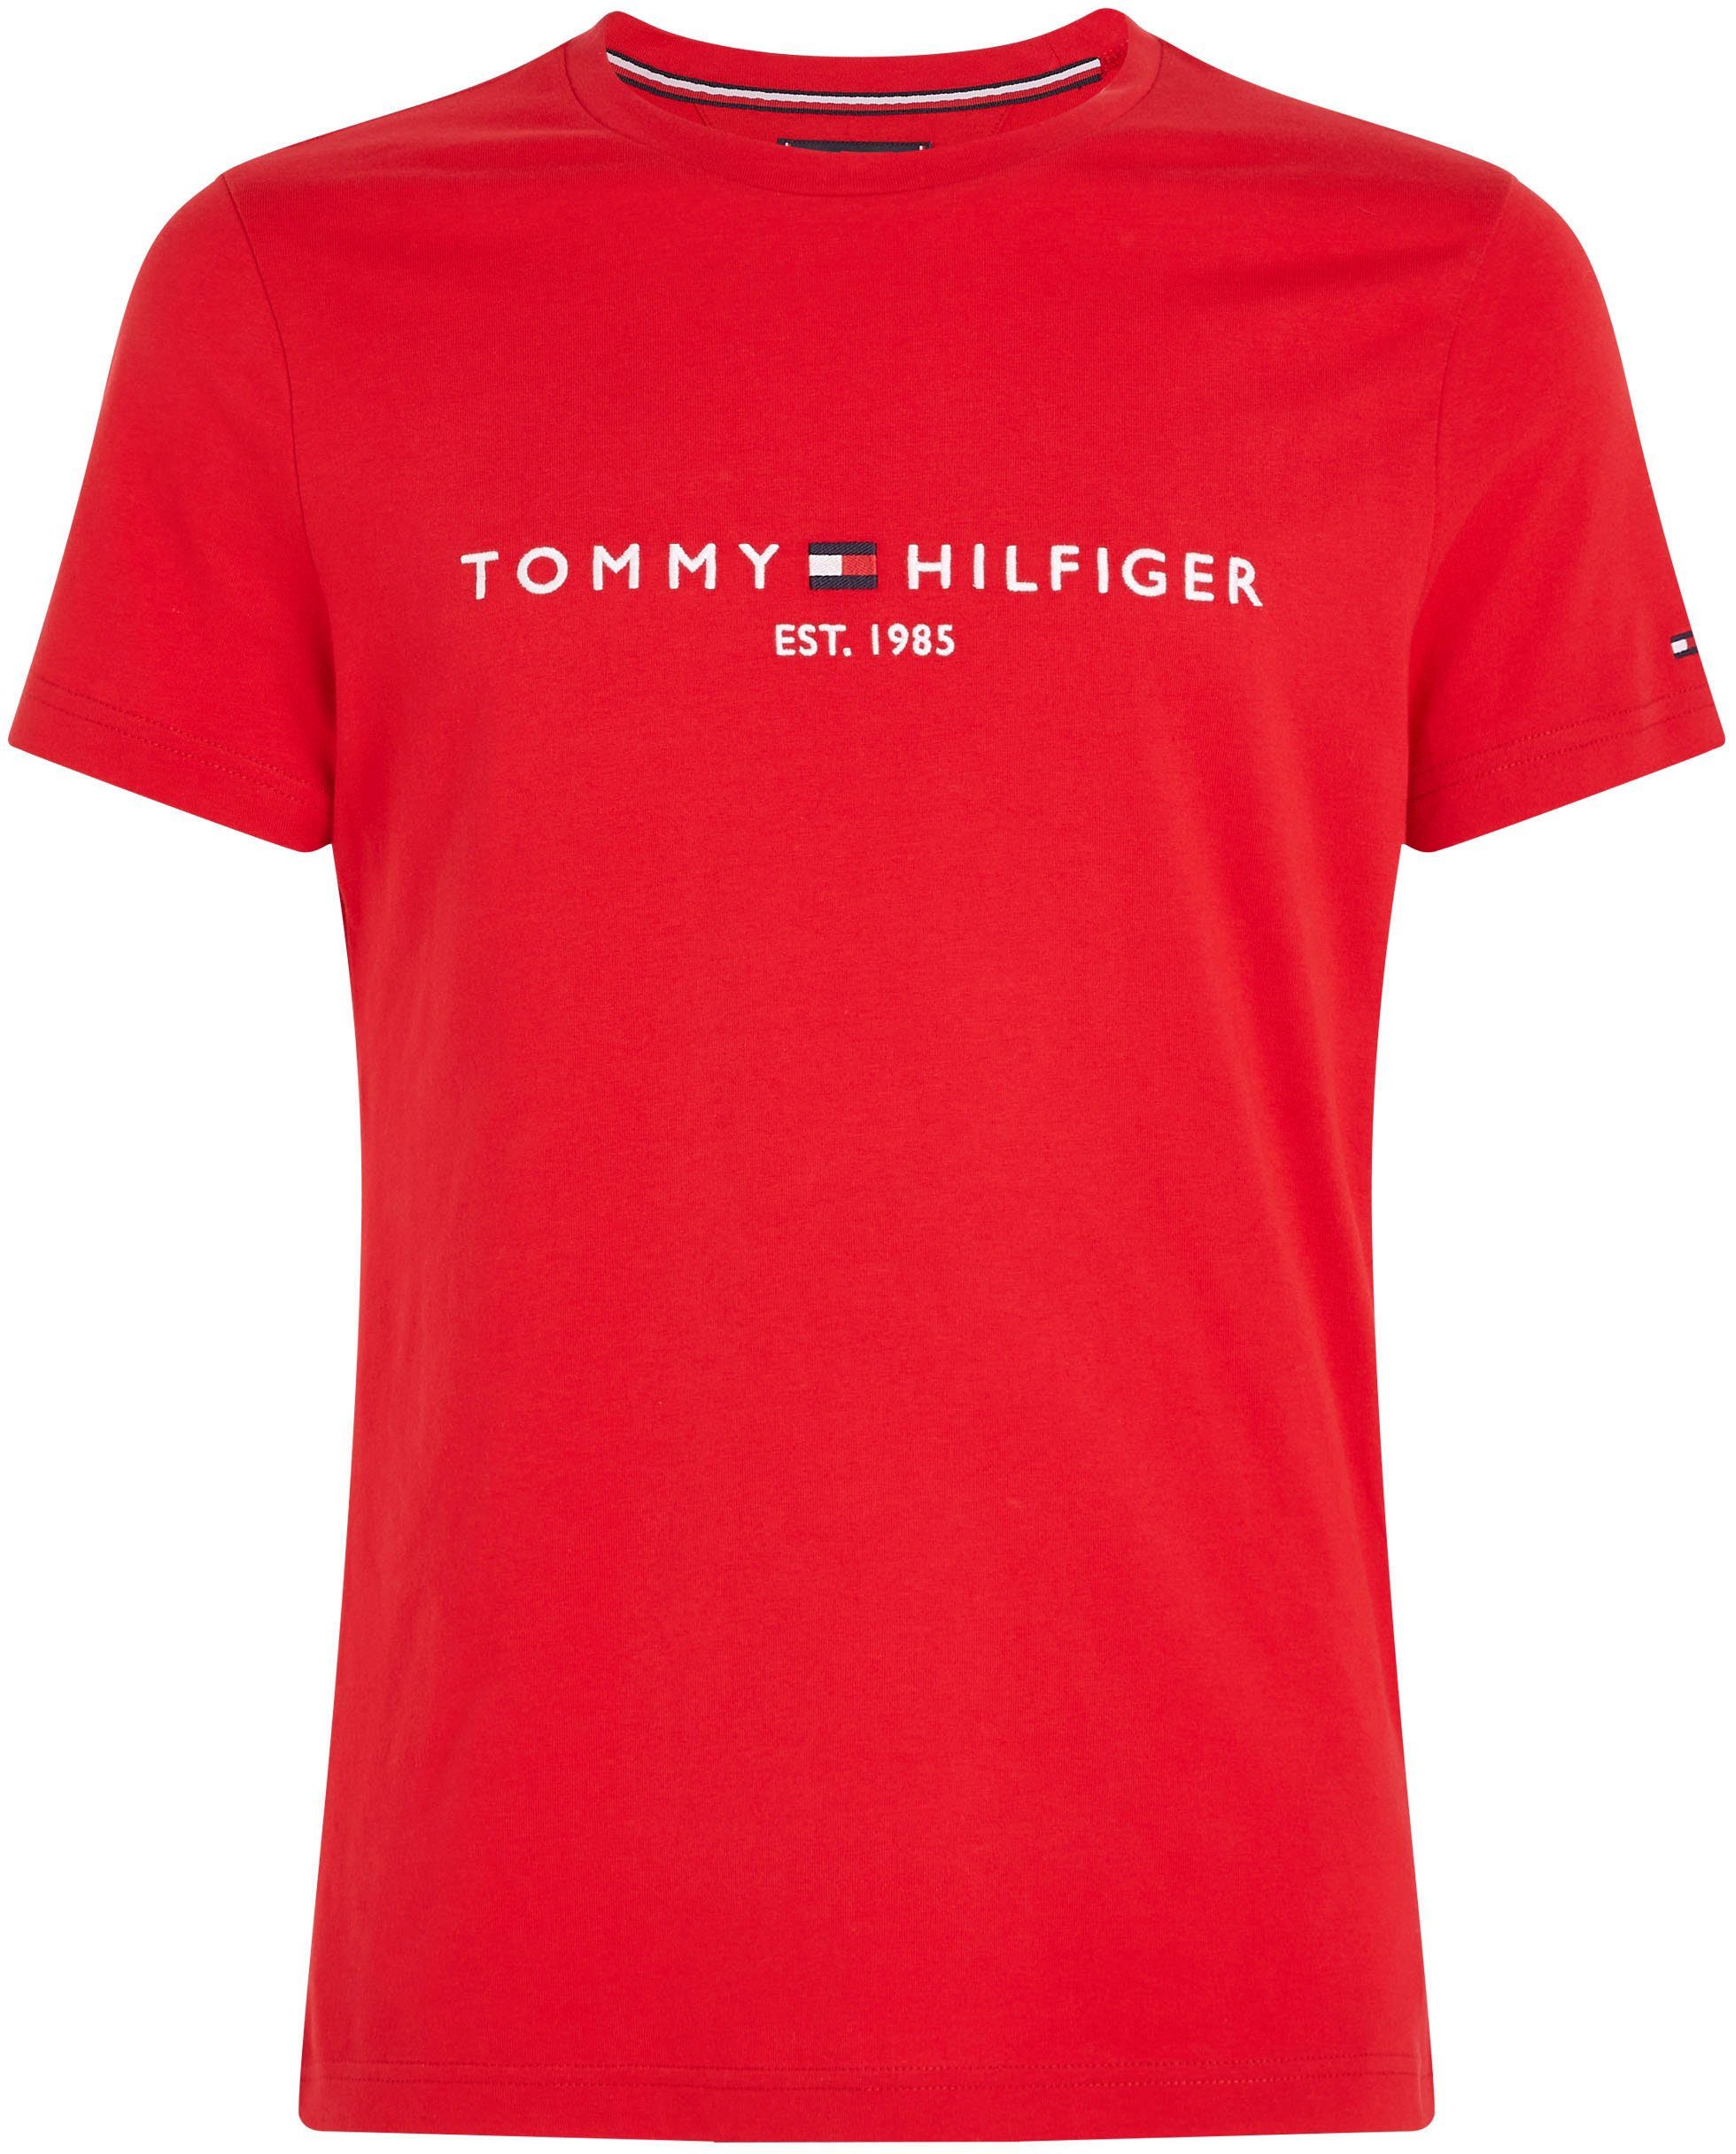 TEE nachhaltiger aus Hilfiger TOMMY Baumwolle T-Shirt LOGO Tommy rot reiner,